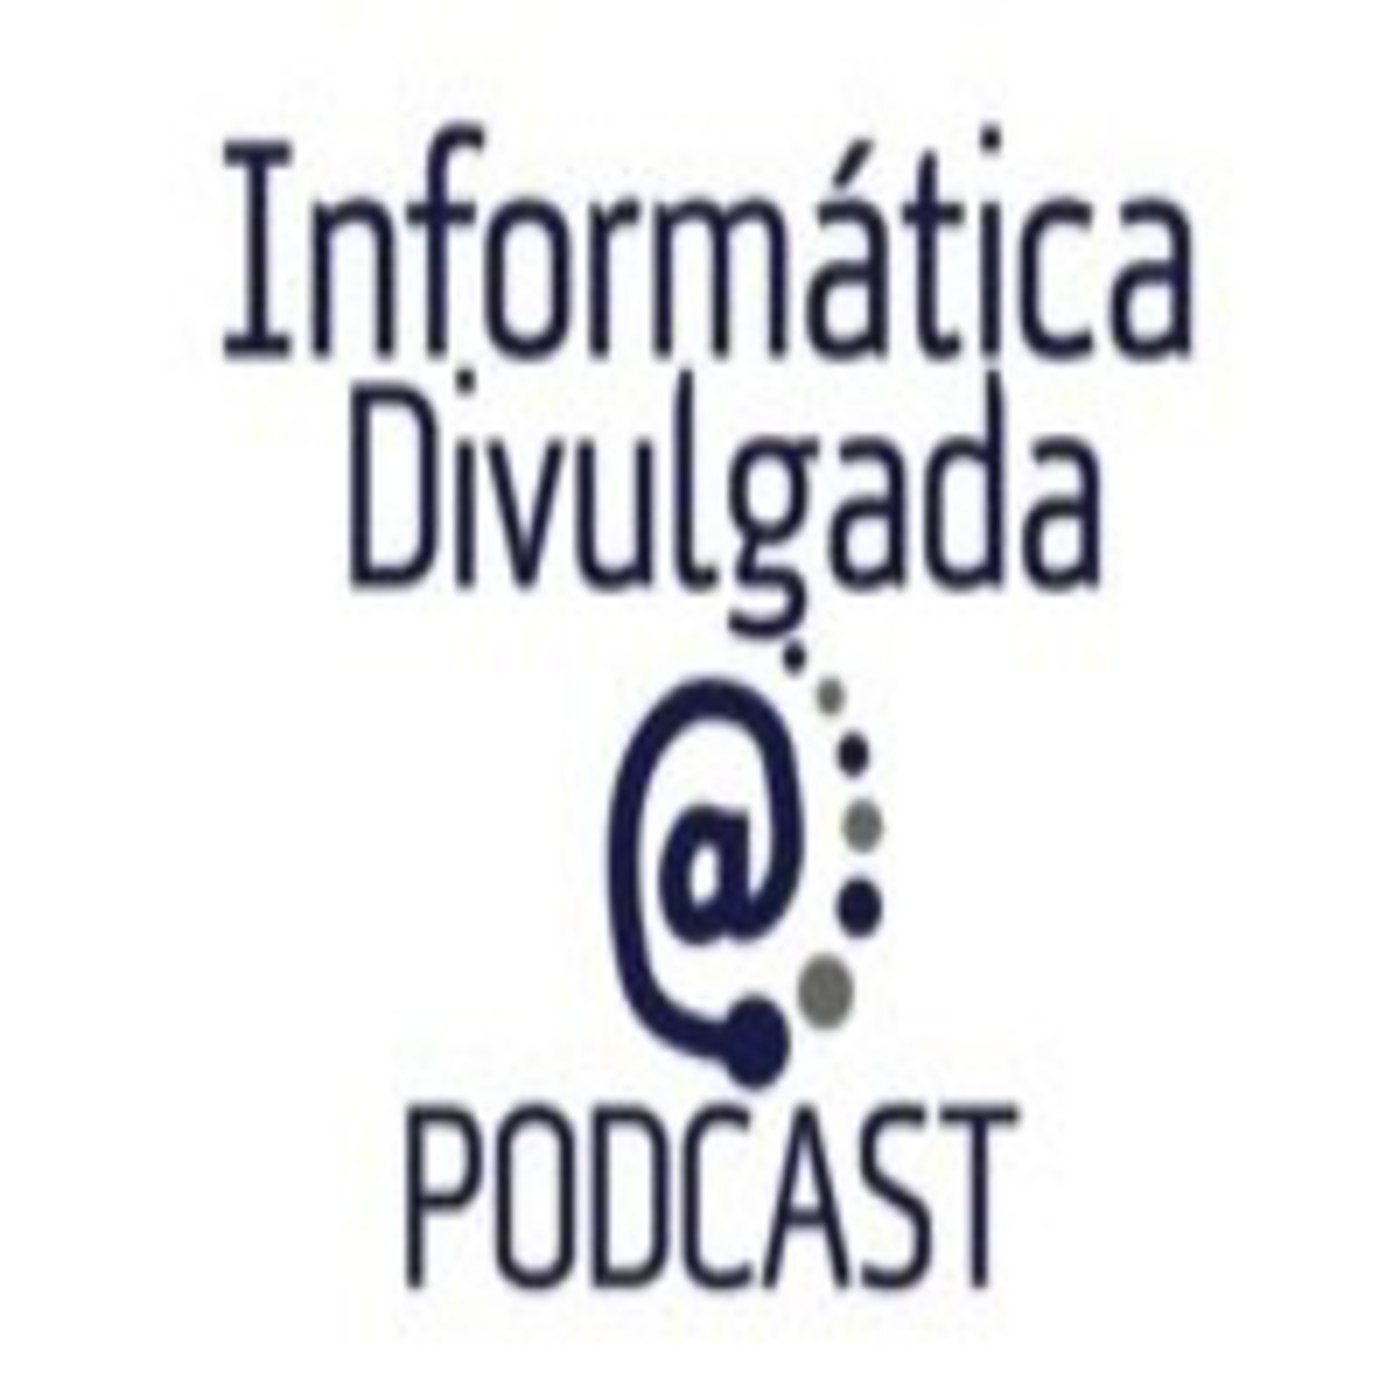 Podcast Informática Divulgada